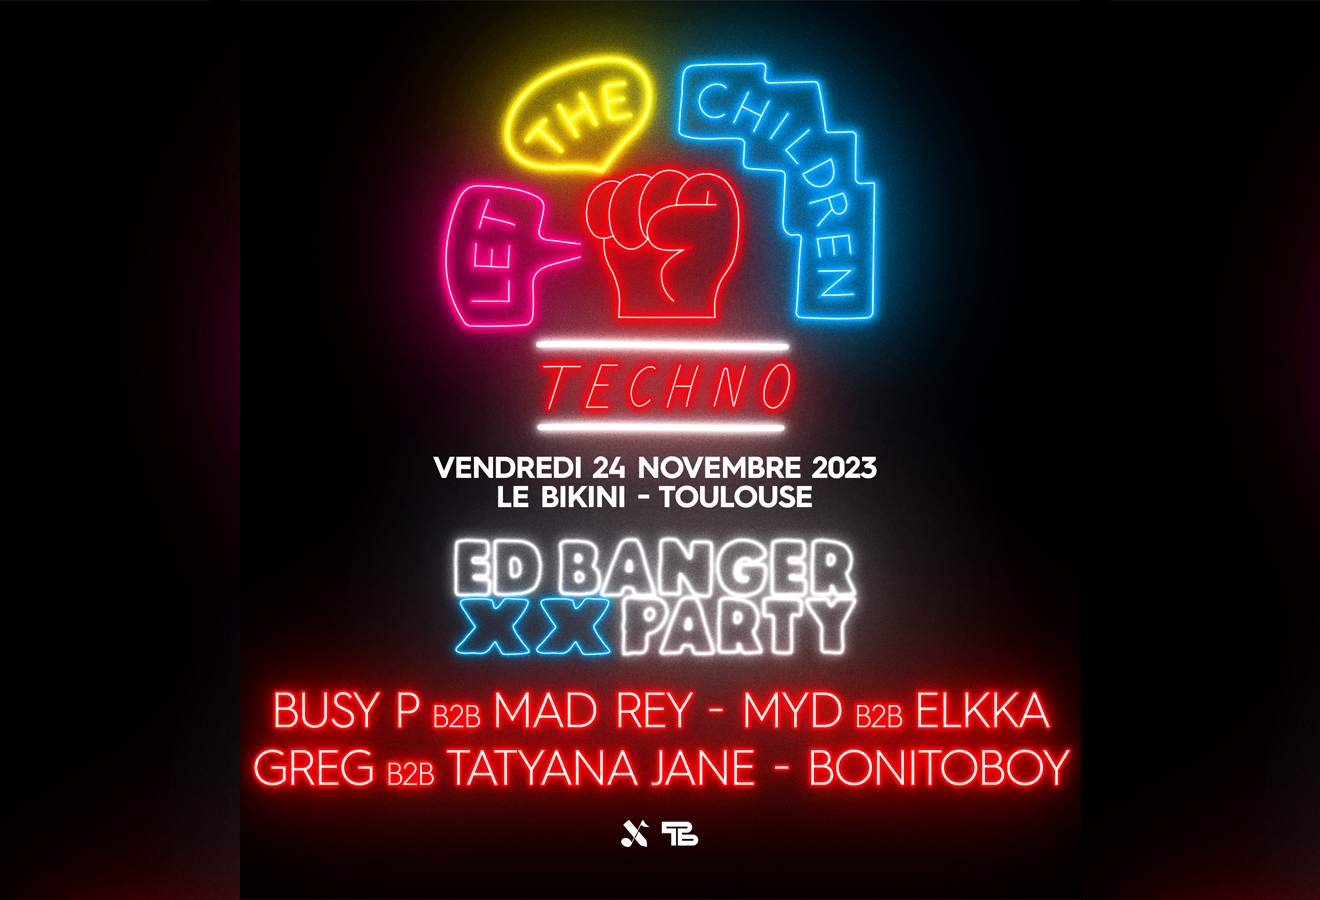 ED BANGER XX Party: Busy P b2b Mad Rey + Myd b2b Elkka + GREG b2b Tatyana Jane + BONITOBOY - フライヤー表